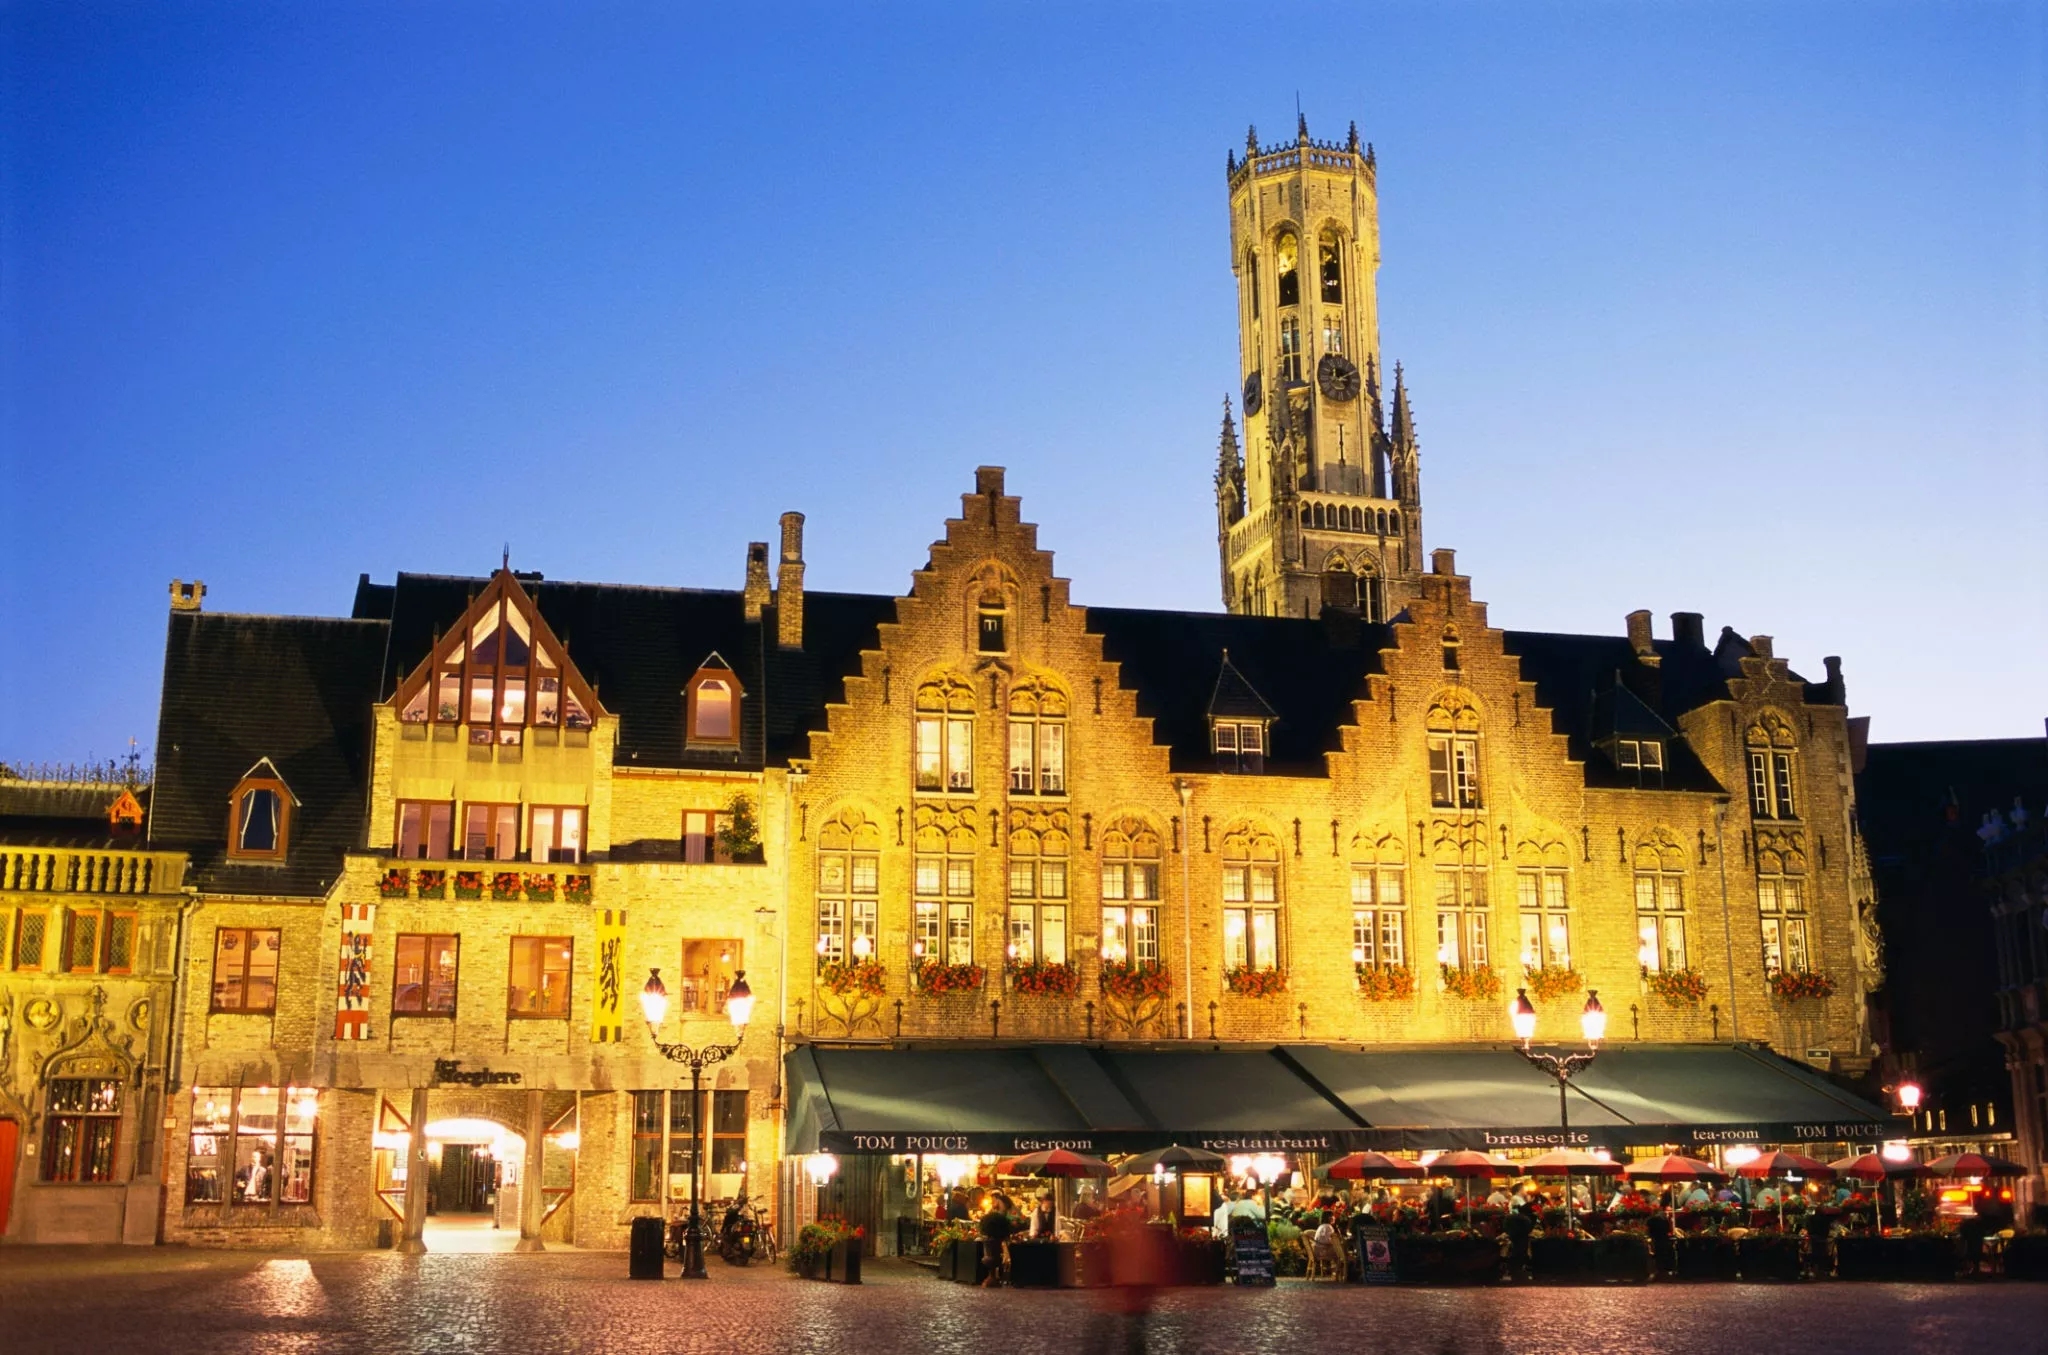 Burg Square in Belgium, Europe | Architecture - Rated 3.7